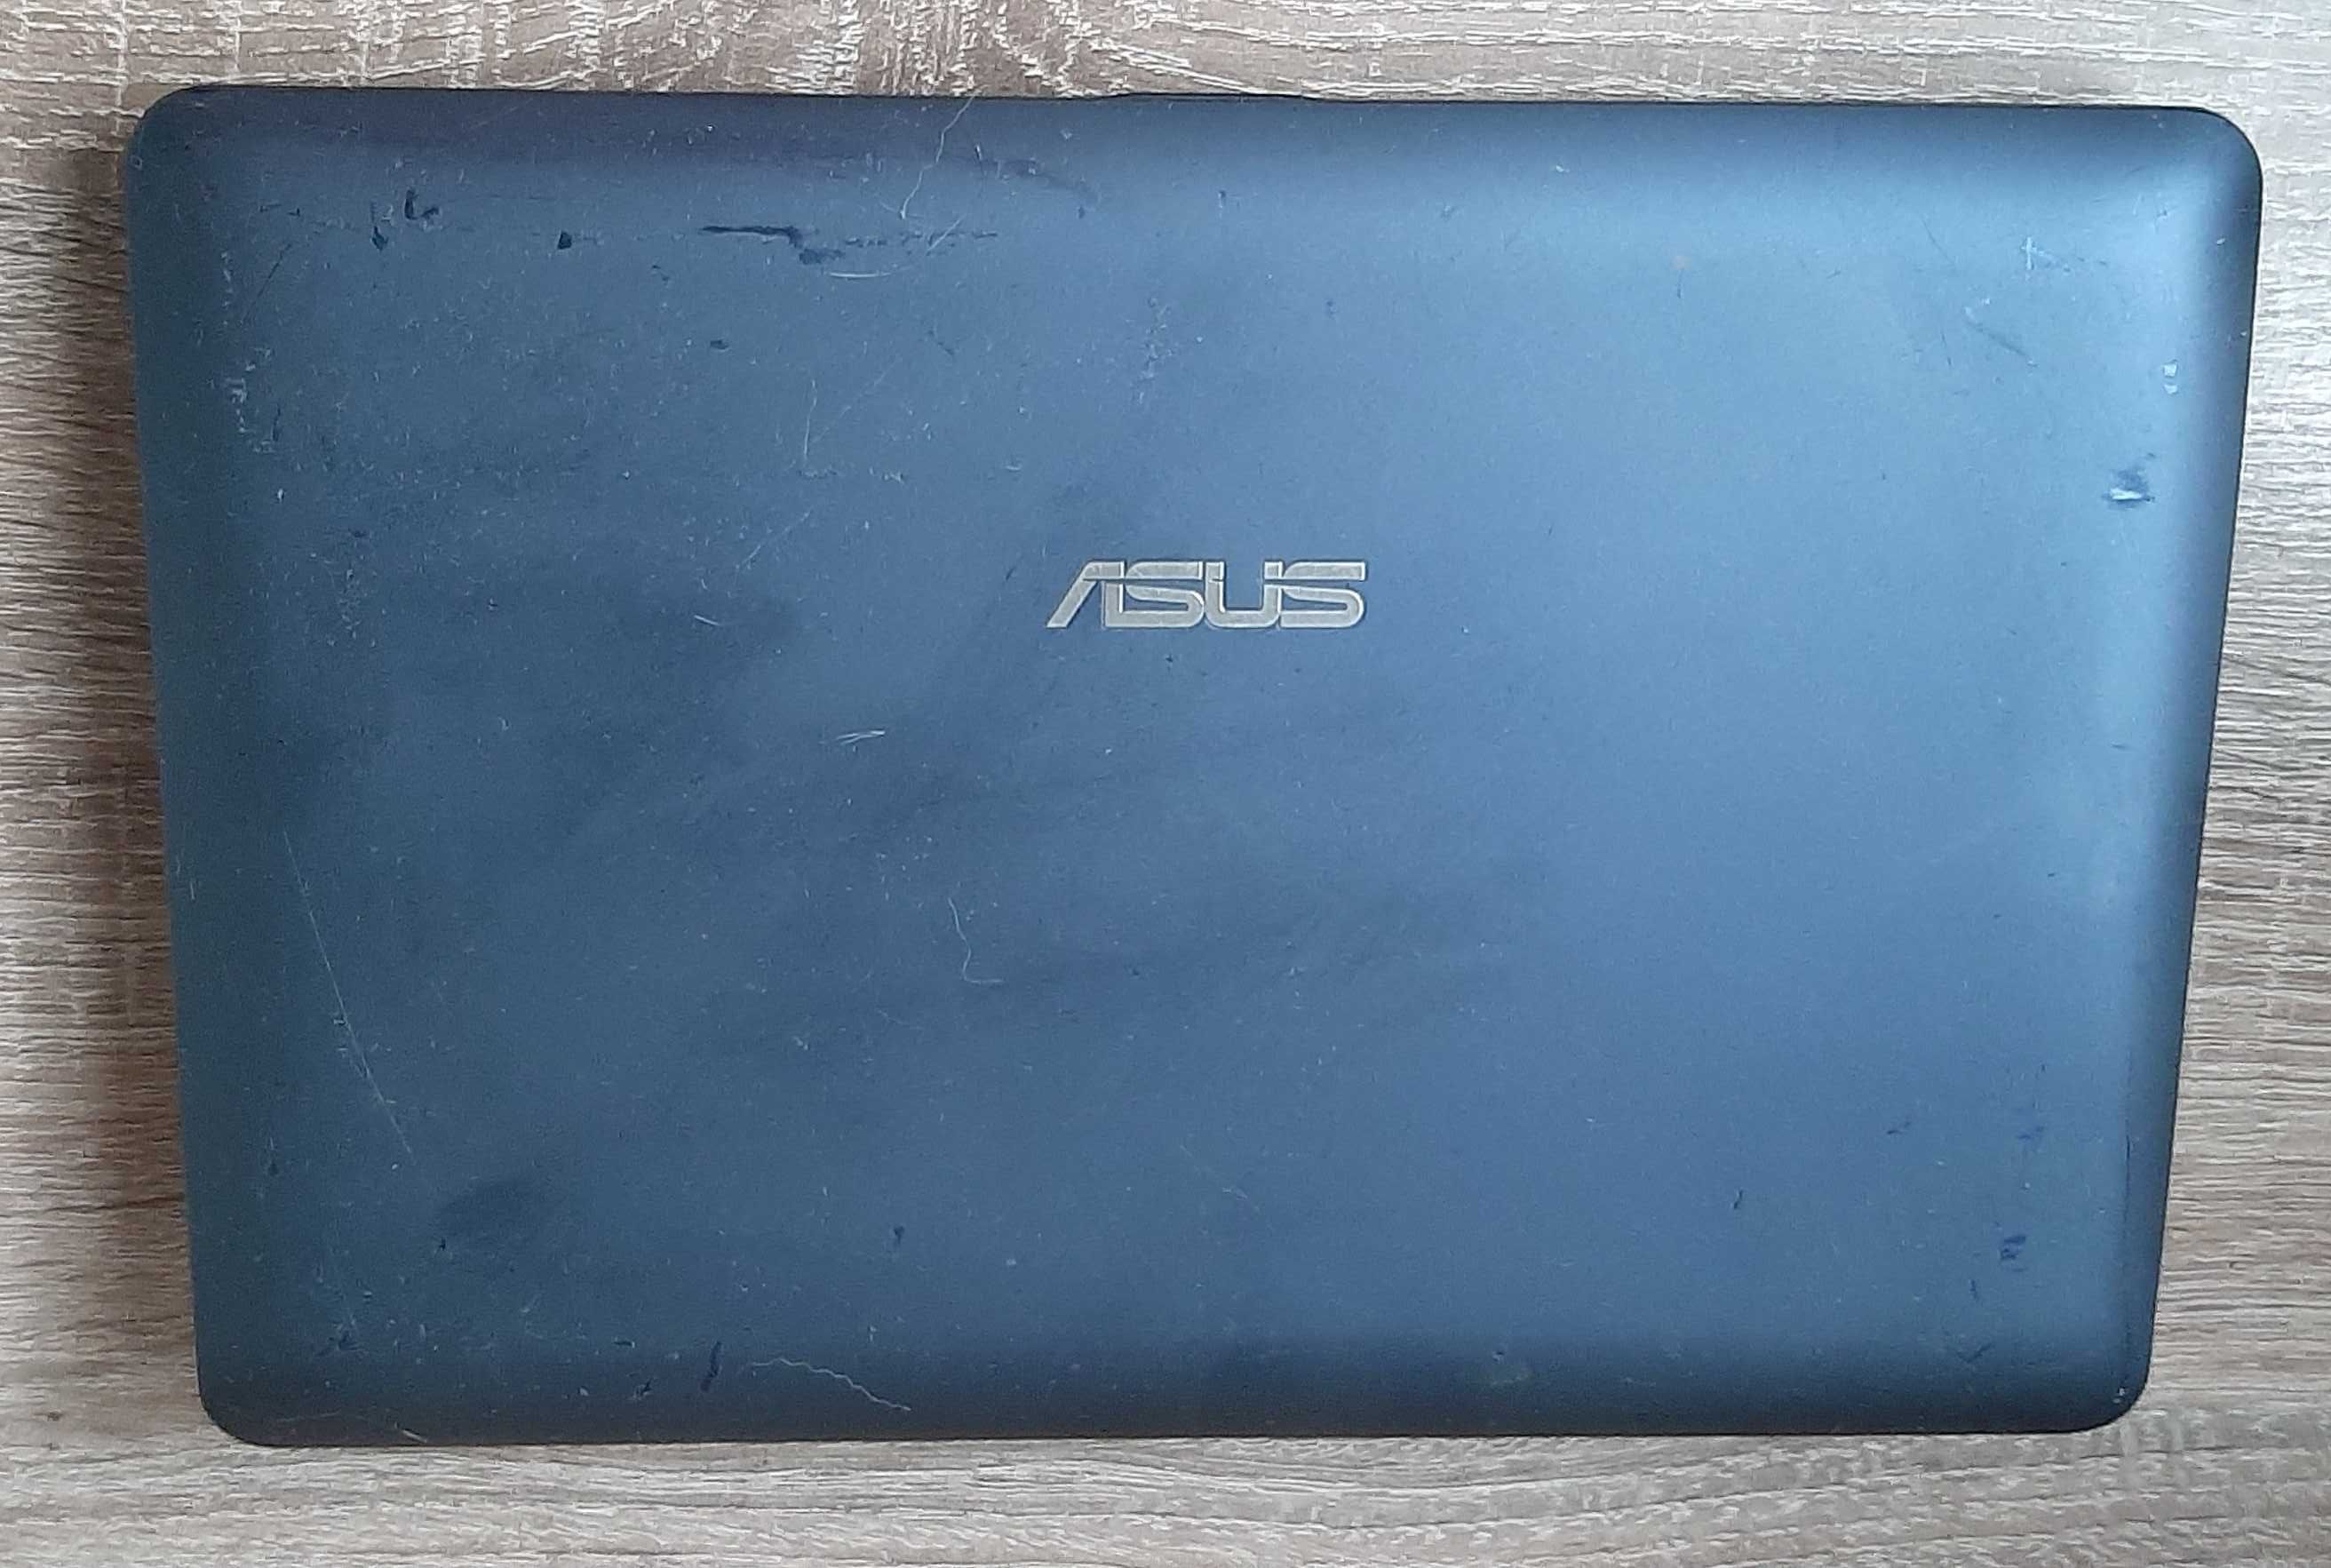 нетбук Asus Eee PC 1015 мышка в подарок